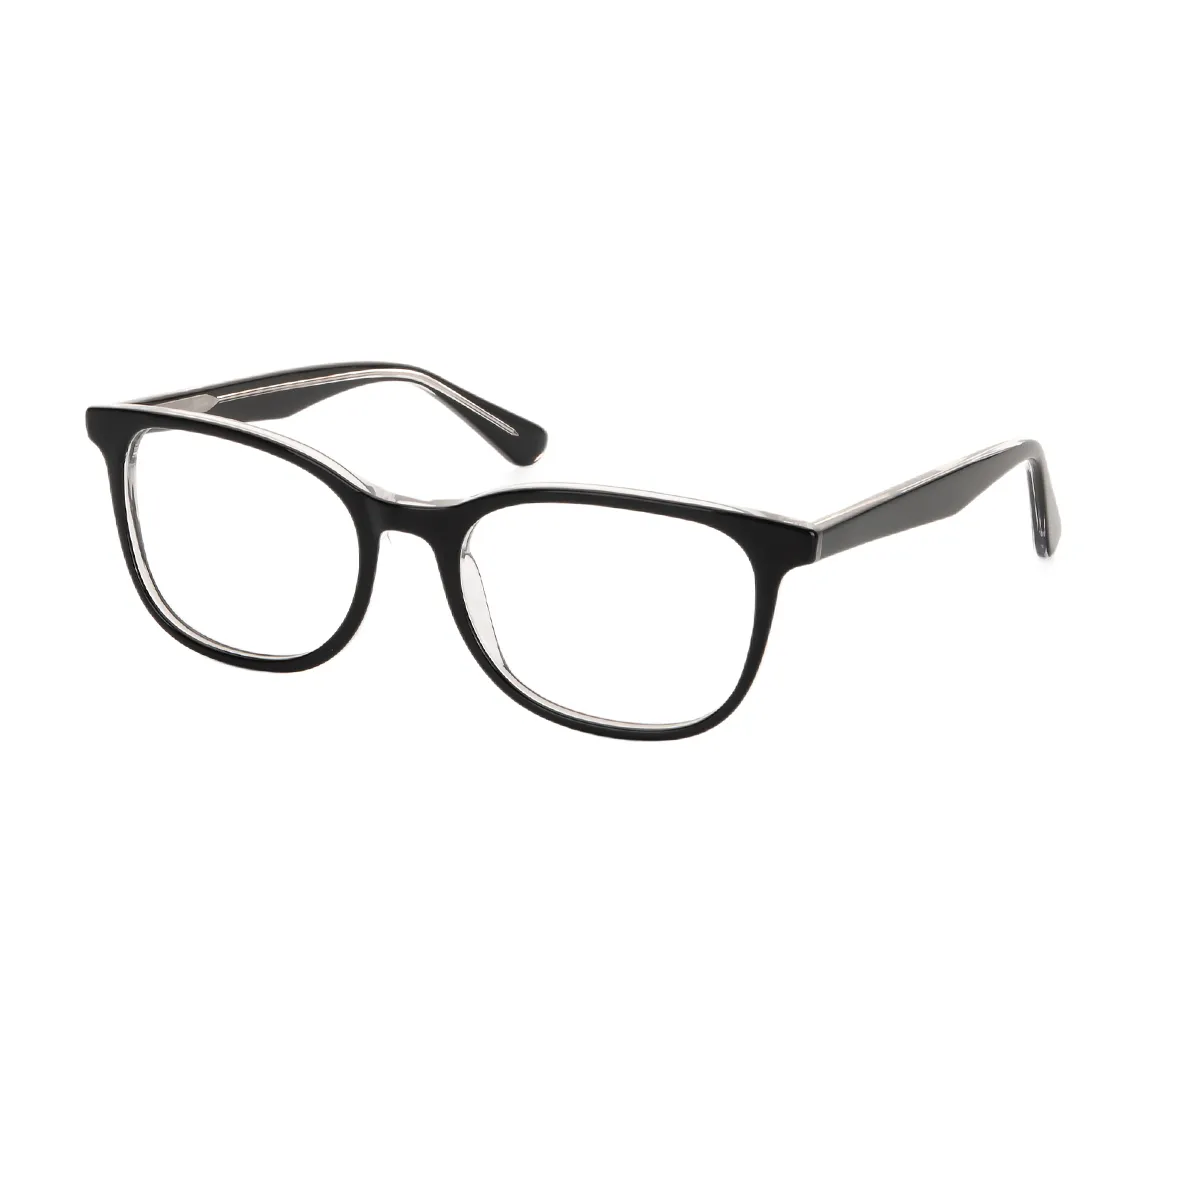 Ring - Oval Gray Glasses for Men & Women